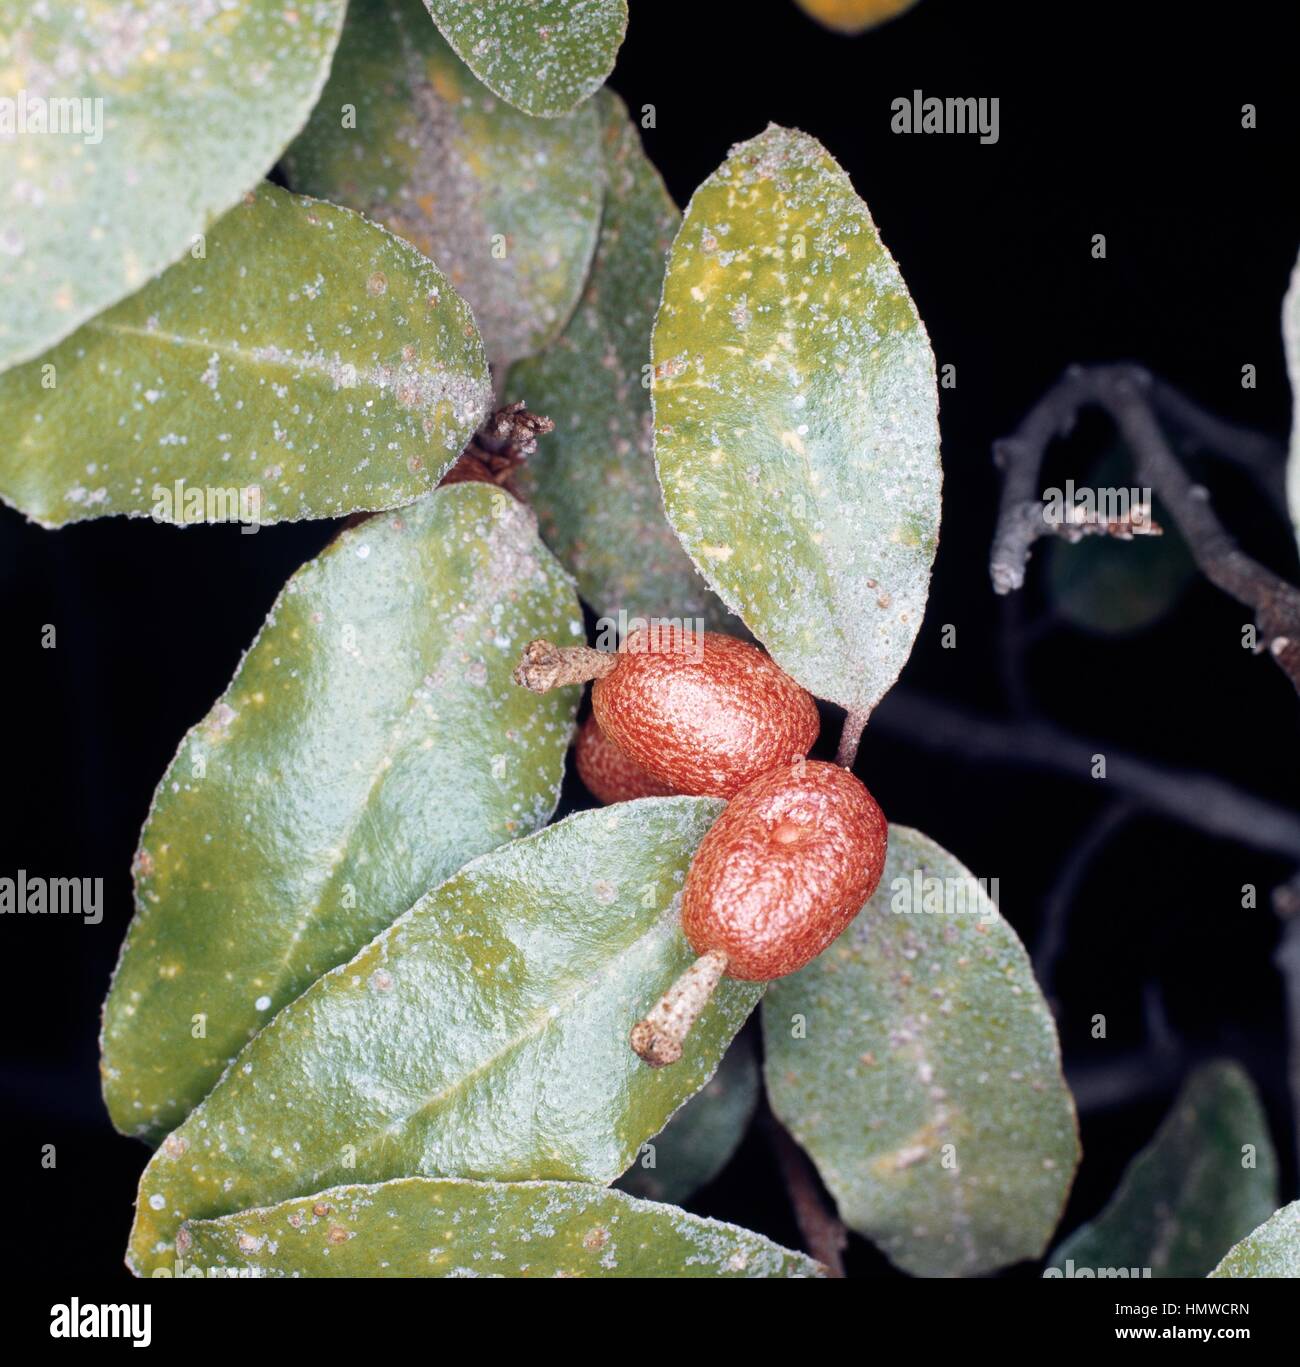 Elaeagnus x ebbingei fruits, Eleagnaceae. Stock Photo